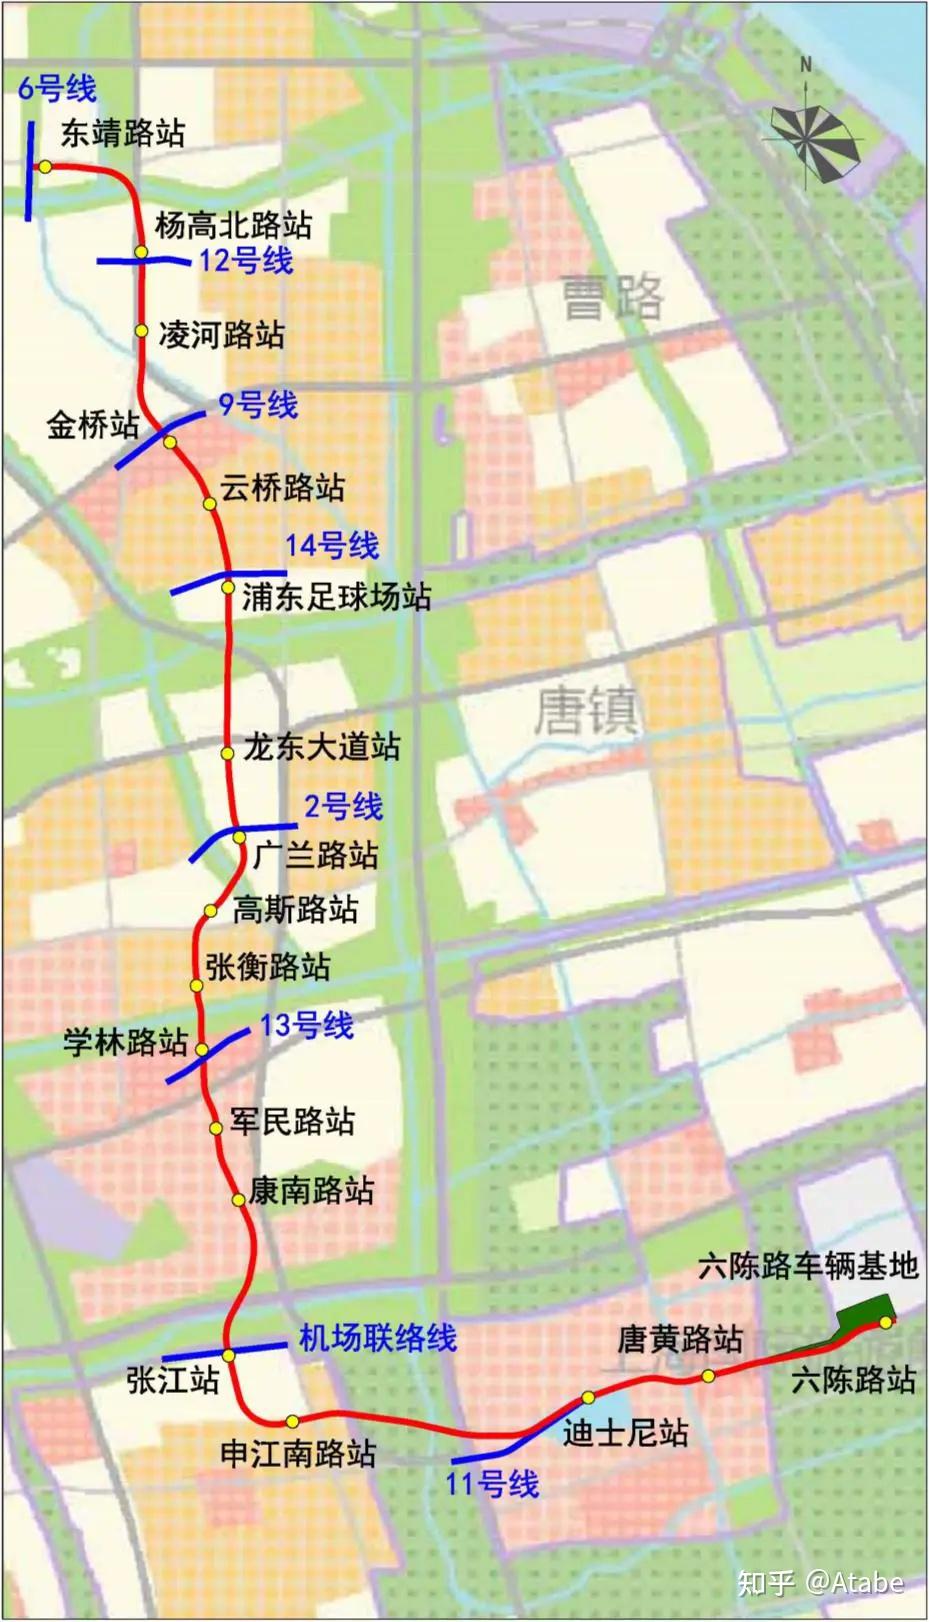 上海市轨道交通网络远期规划简述(2035总规)